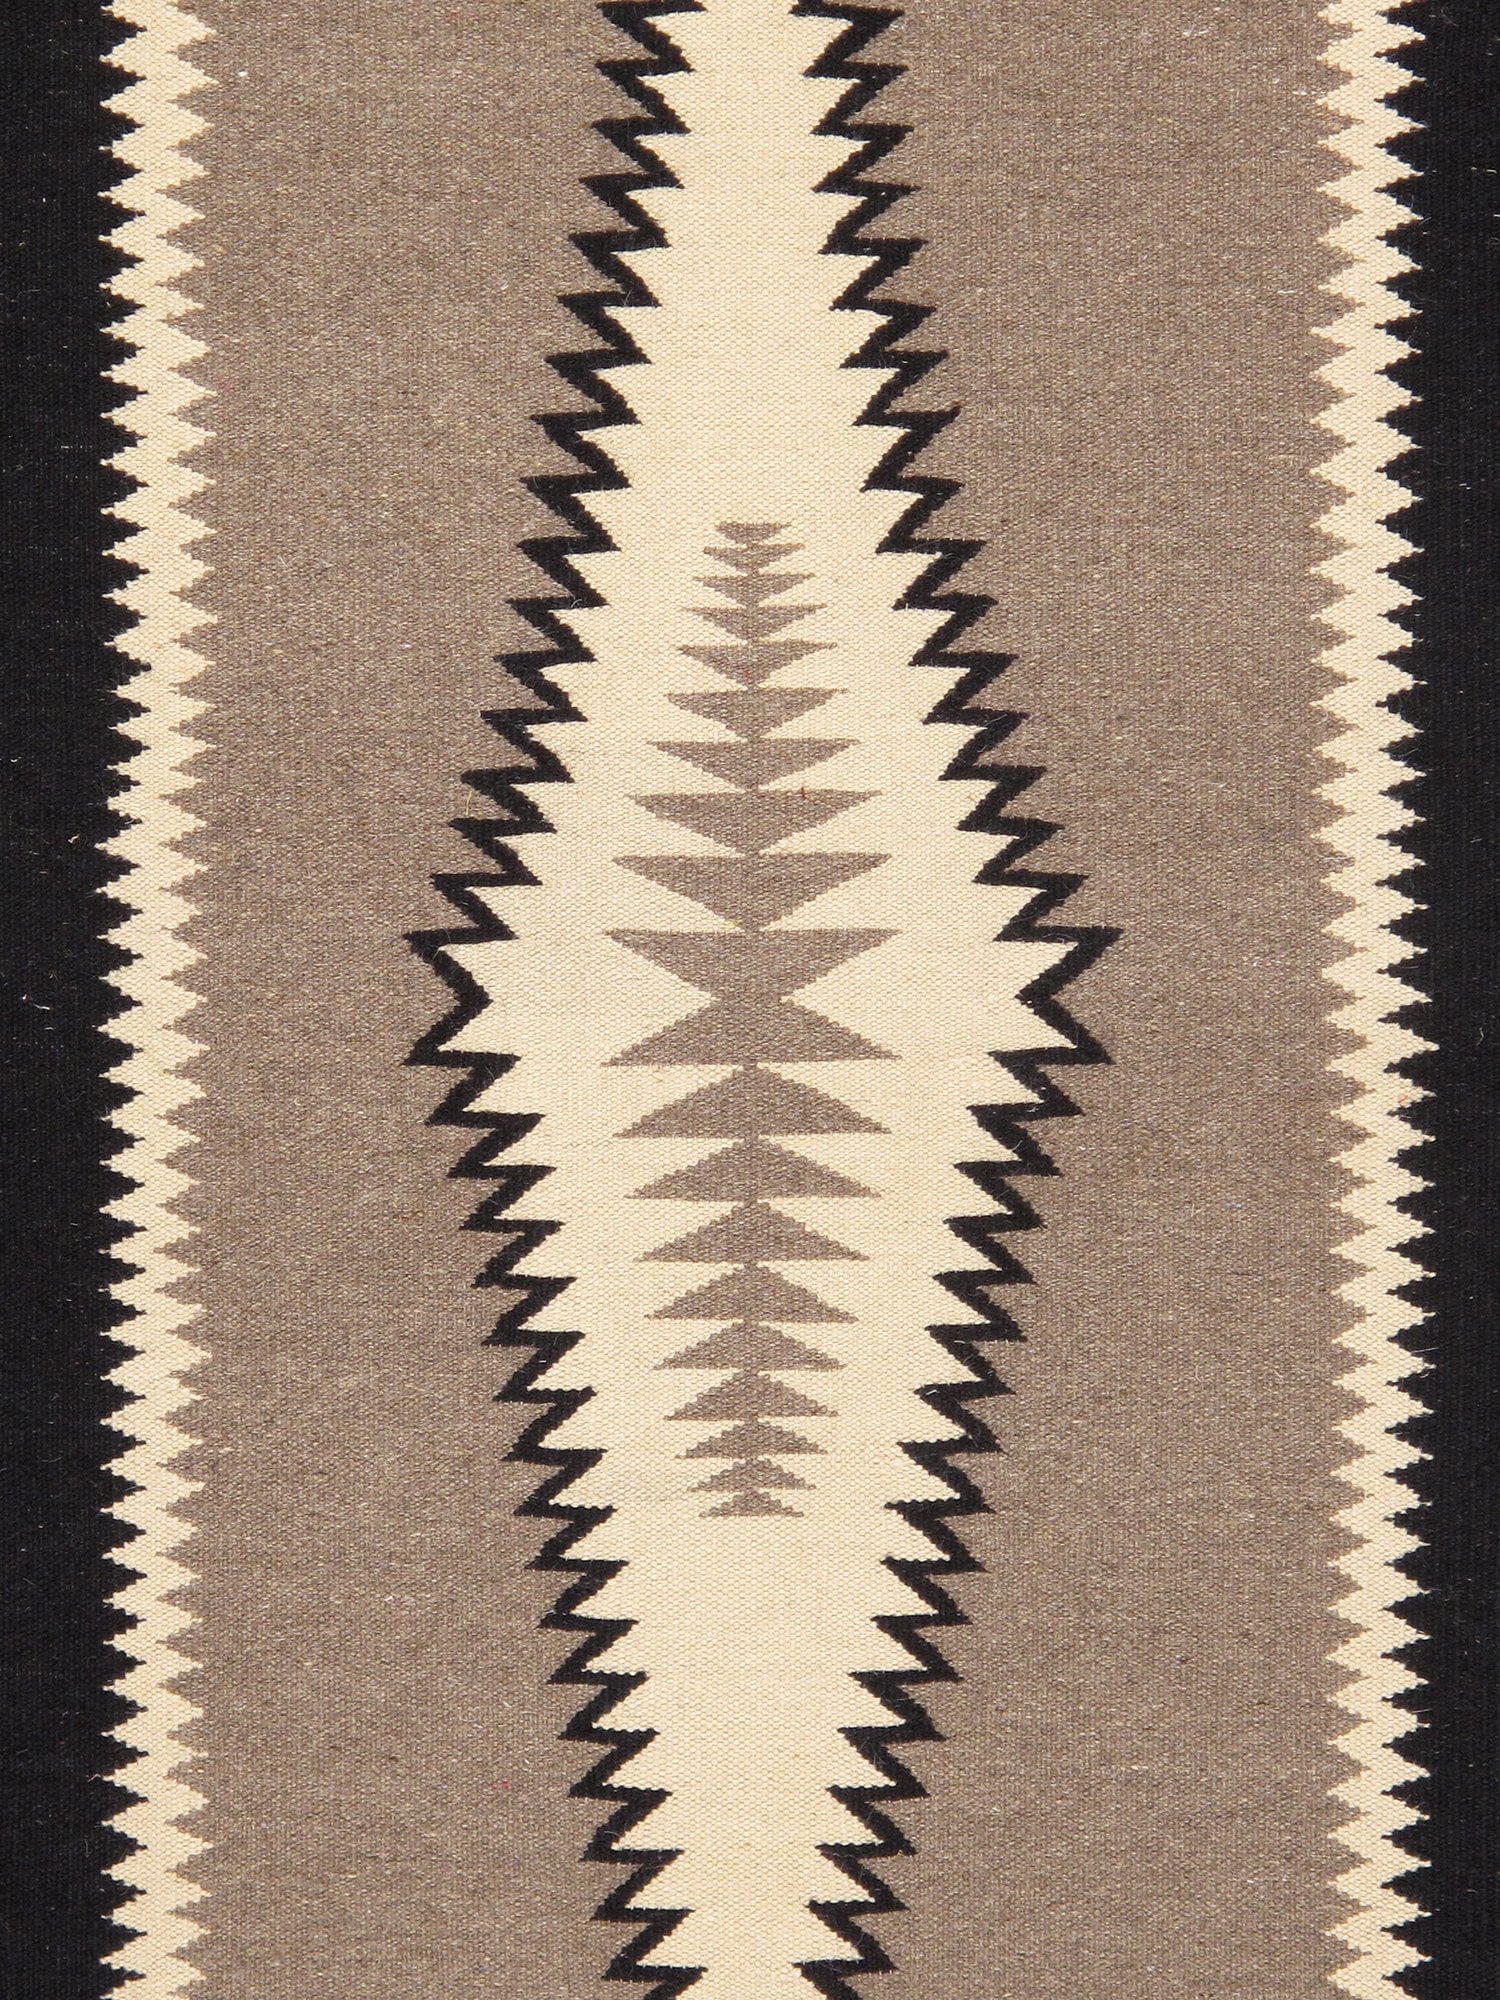 Woolen Kilim, 2.3 x 1.6 mts